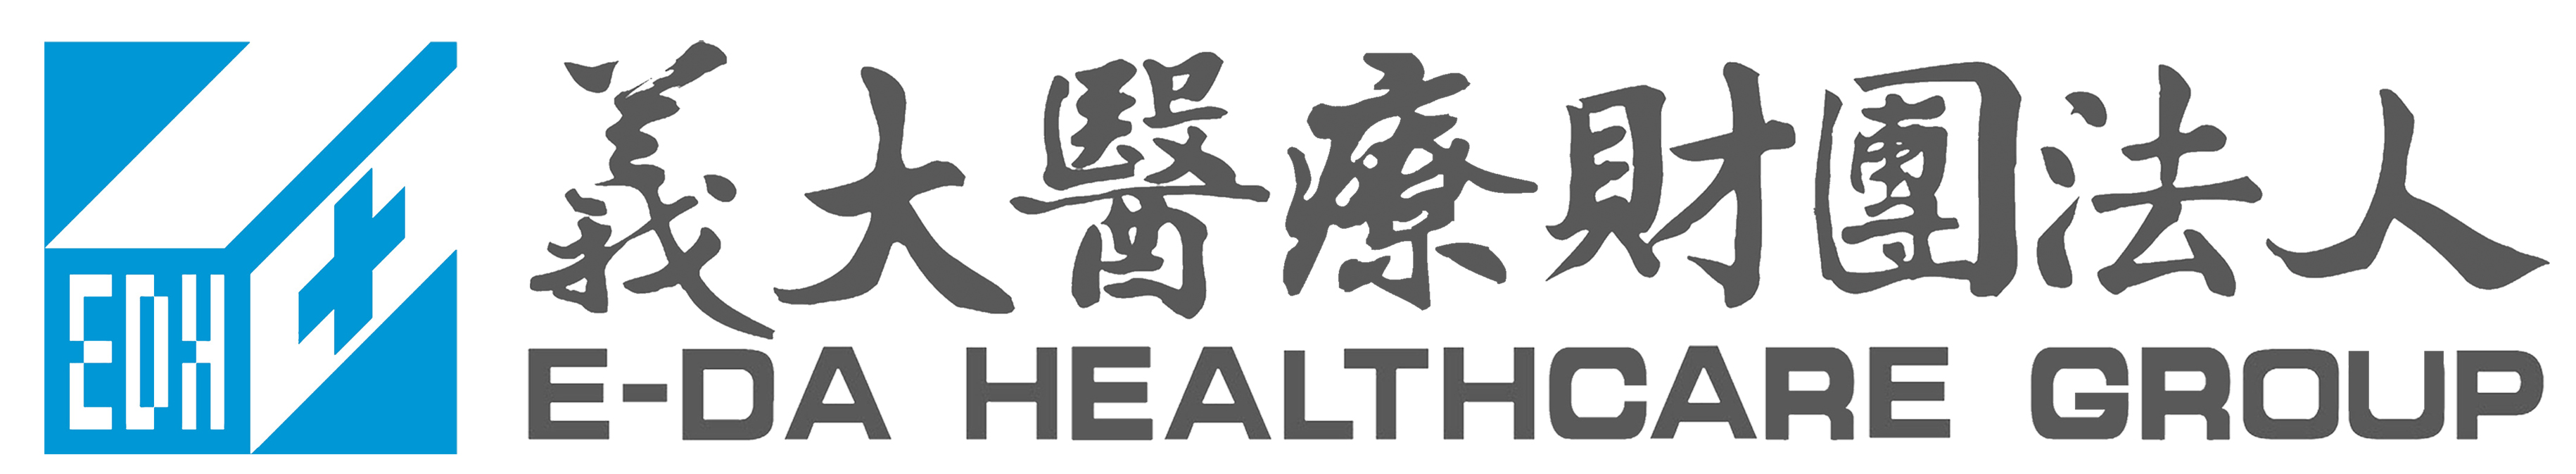 義大醫療-Logo中英文_20150520.jpg